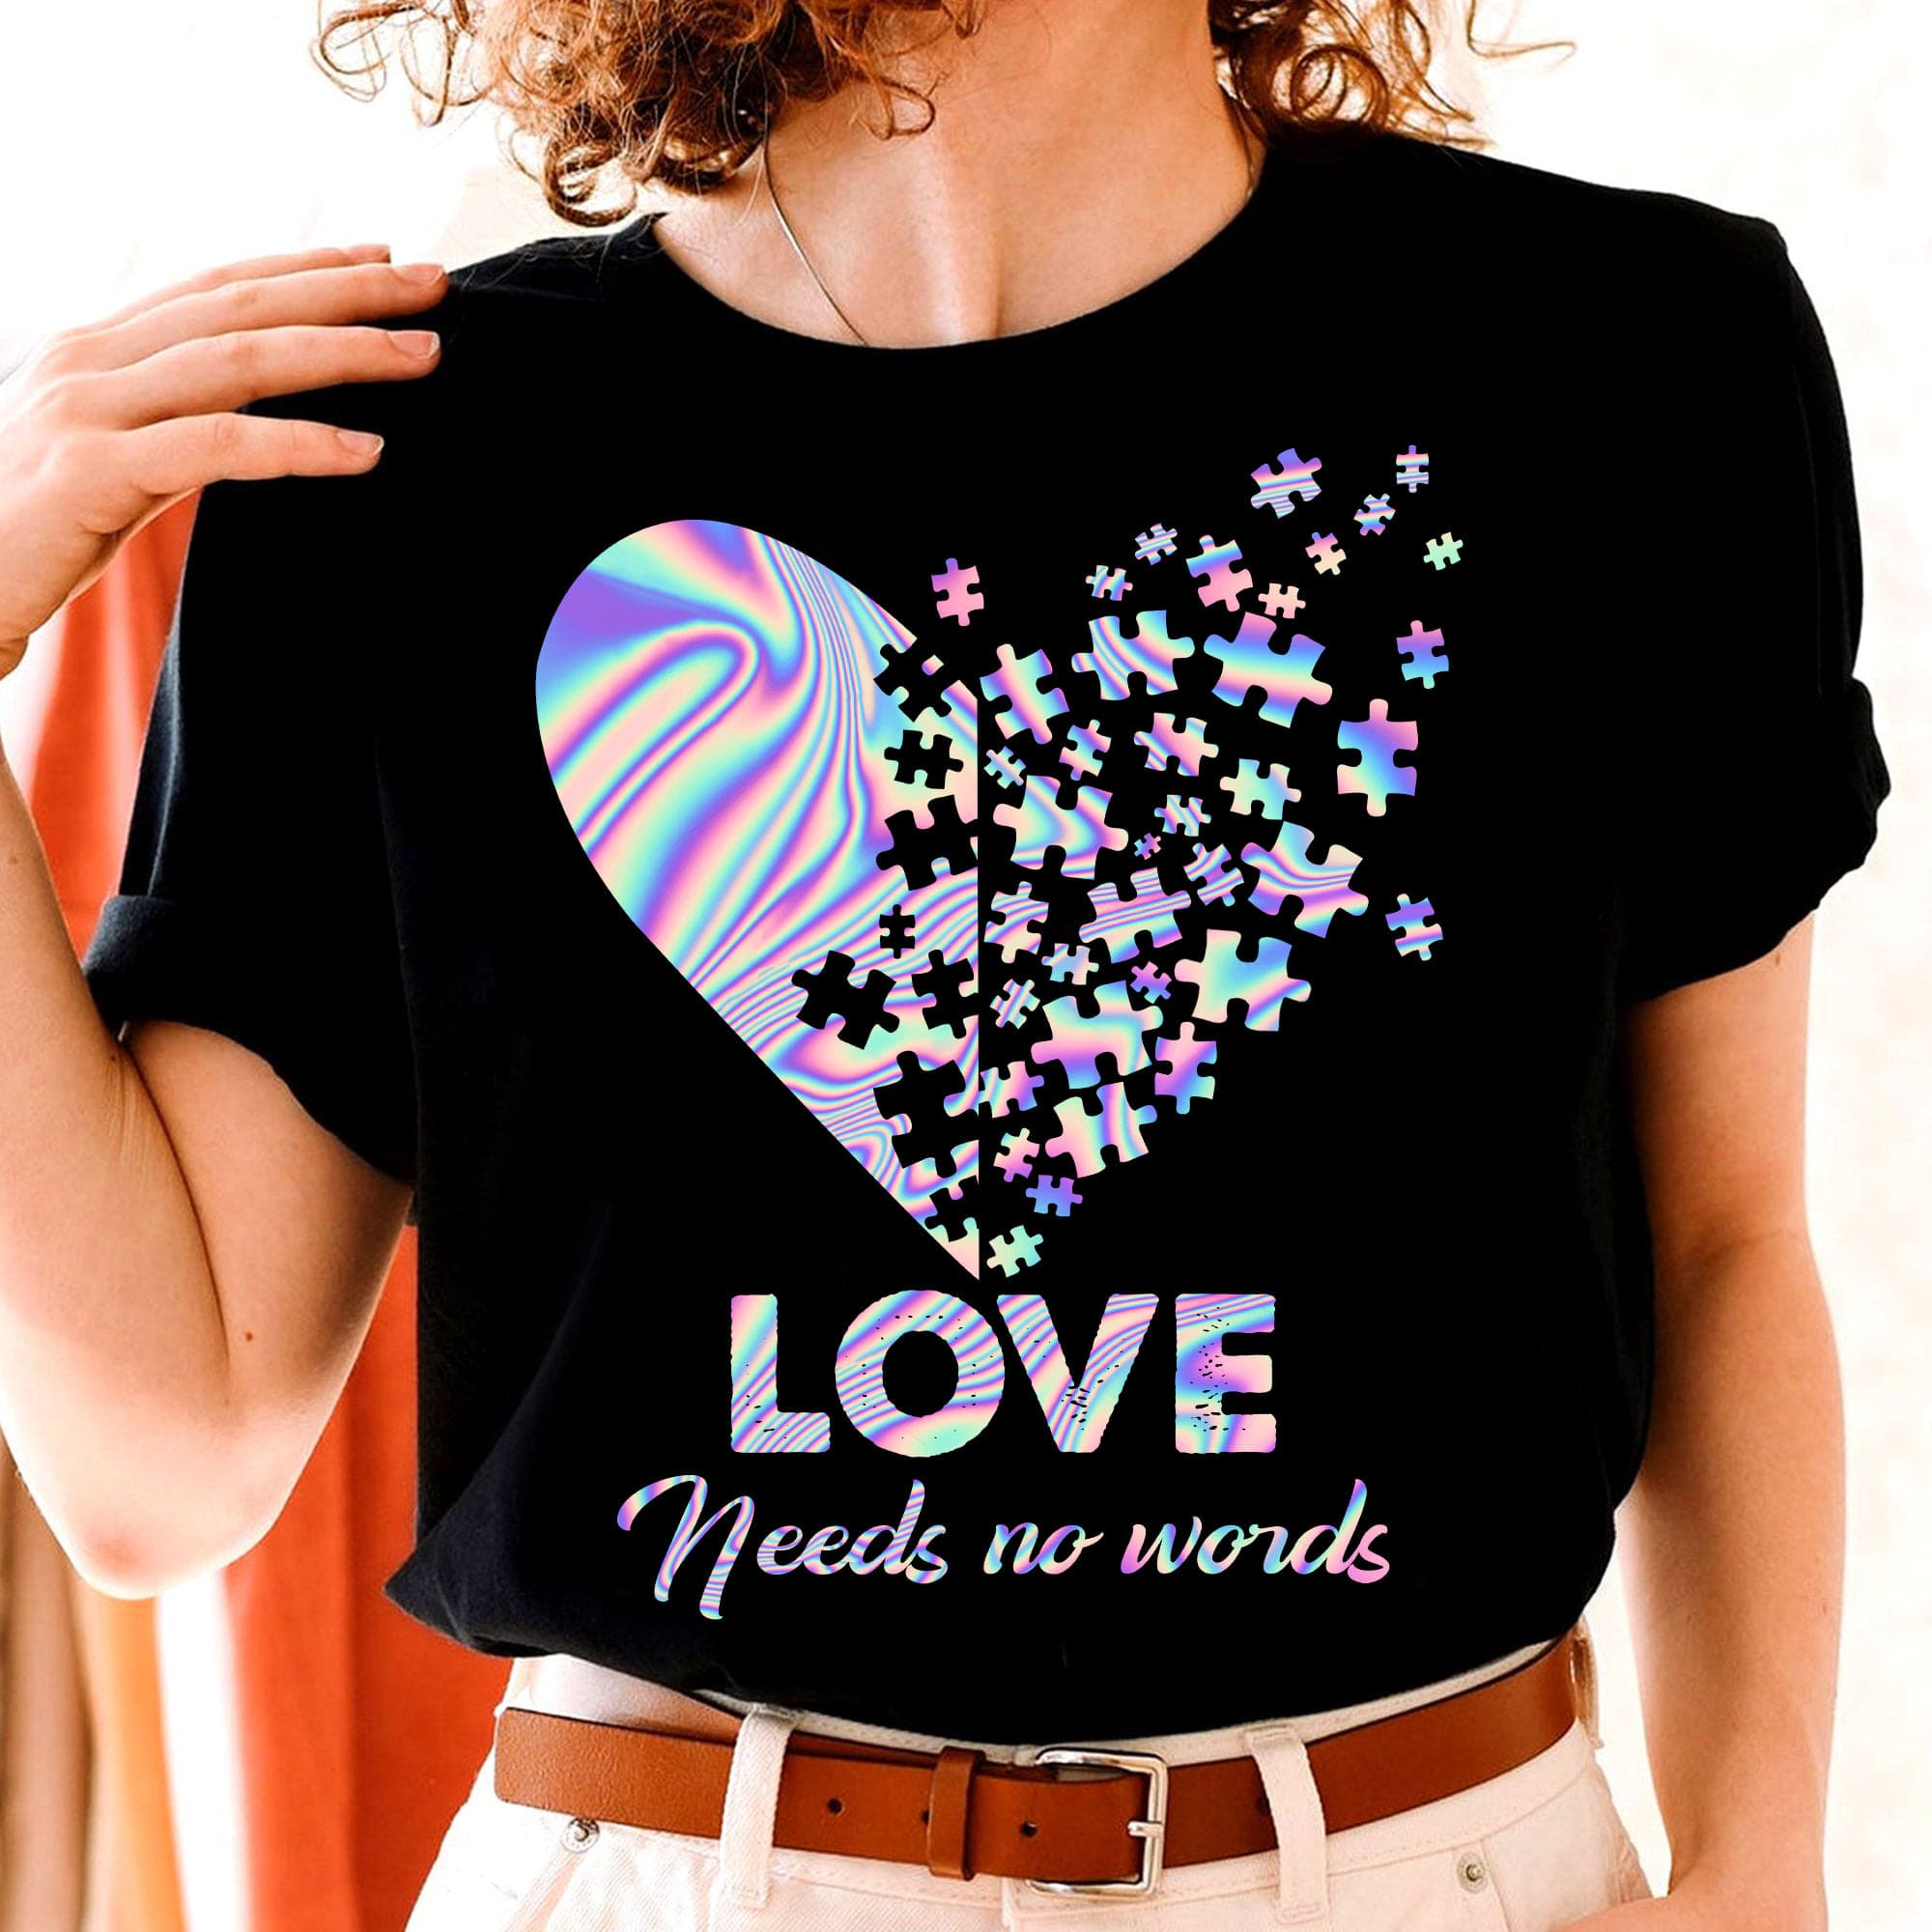 Love needs no words - Autism awareness, love accept understand